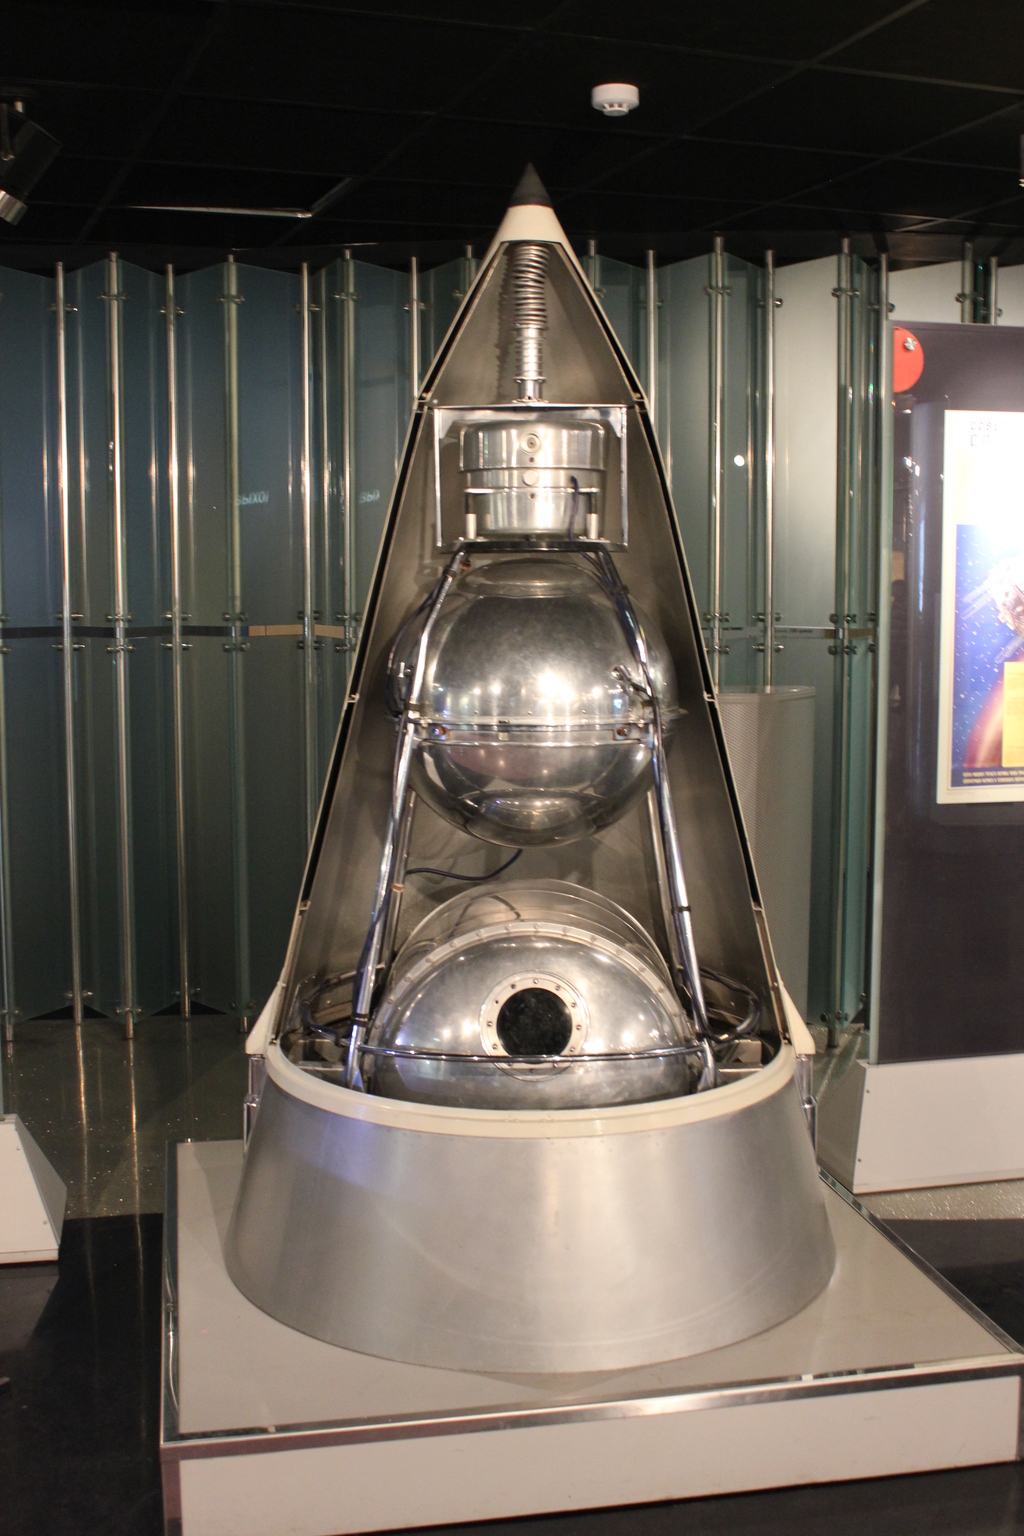 Sondes soviétiques Sputnik et Luna au 1/35e en résine. Montage GE3fKb-Sputnik-2-01